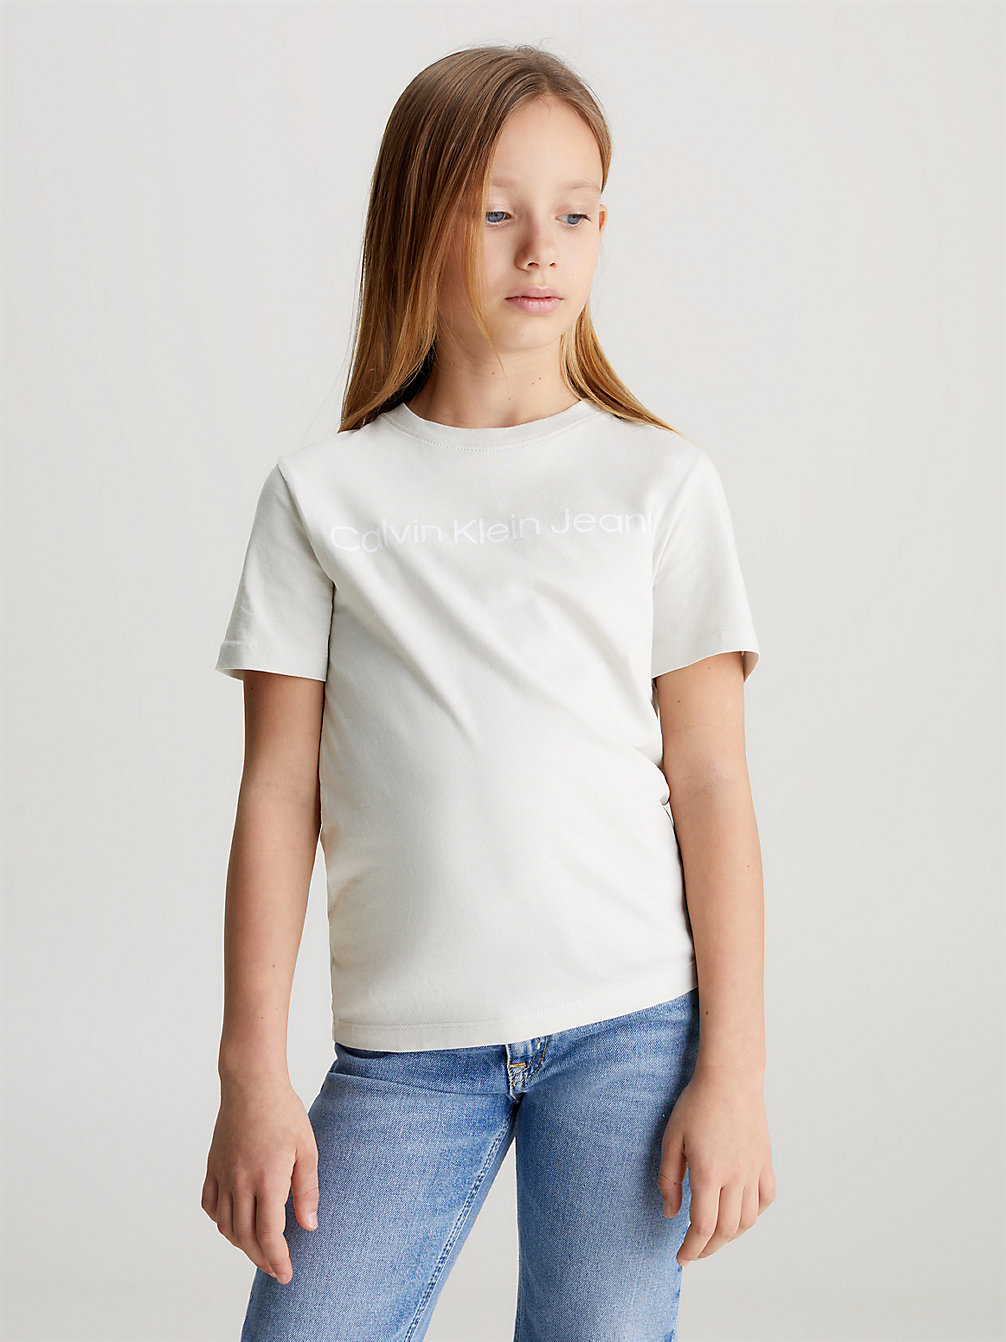 LUNAR ROCK Logo-T-Shirt Für Kinder undefined Kids Unisex Calvin Klein